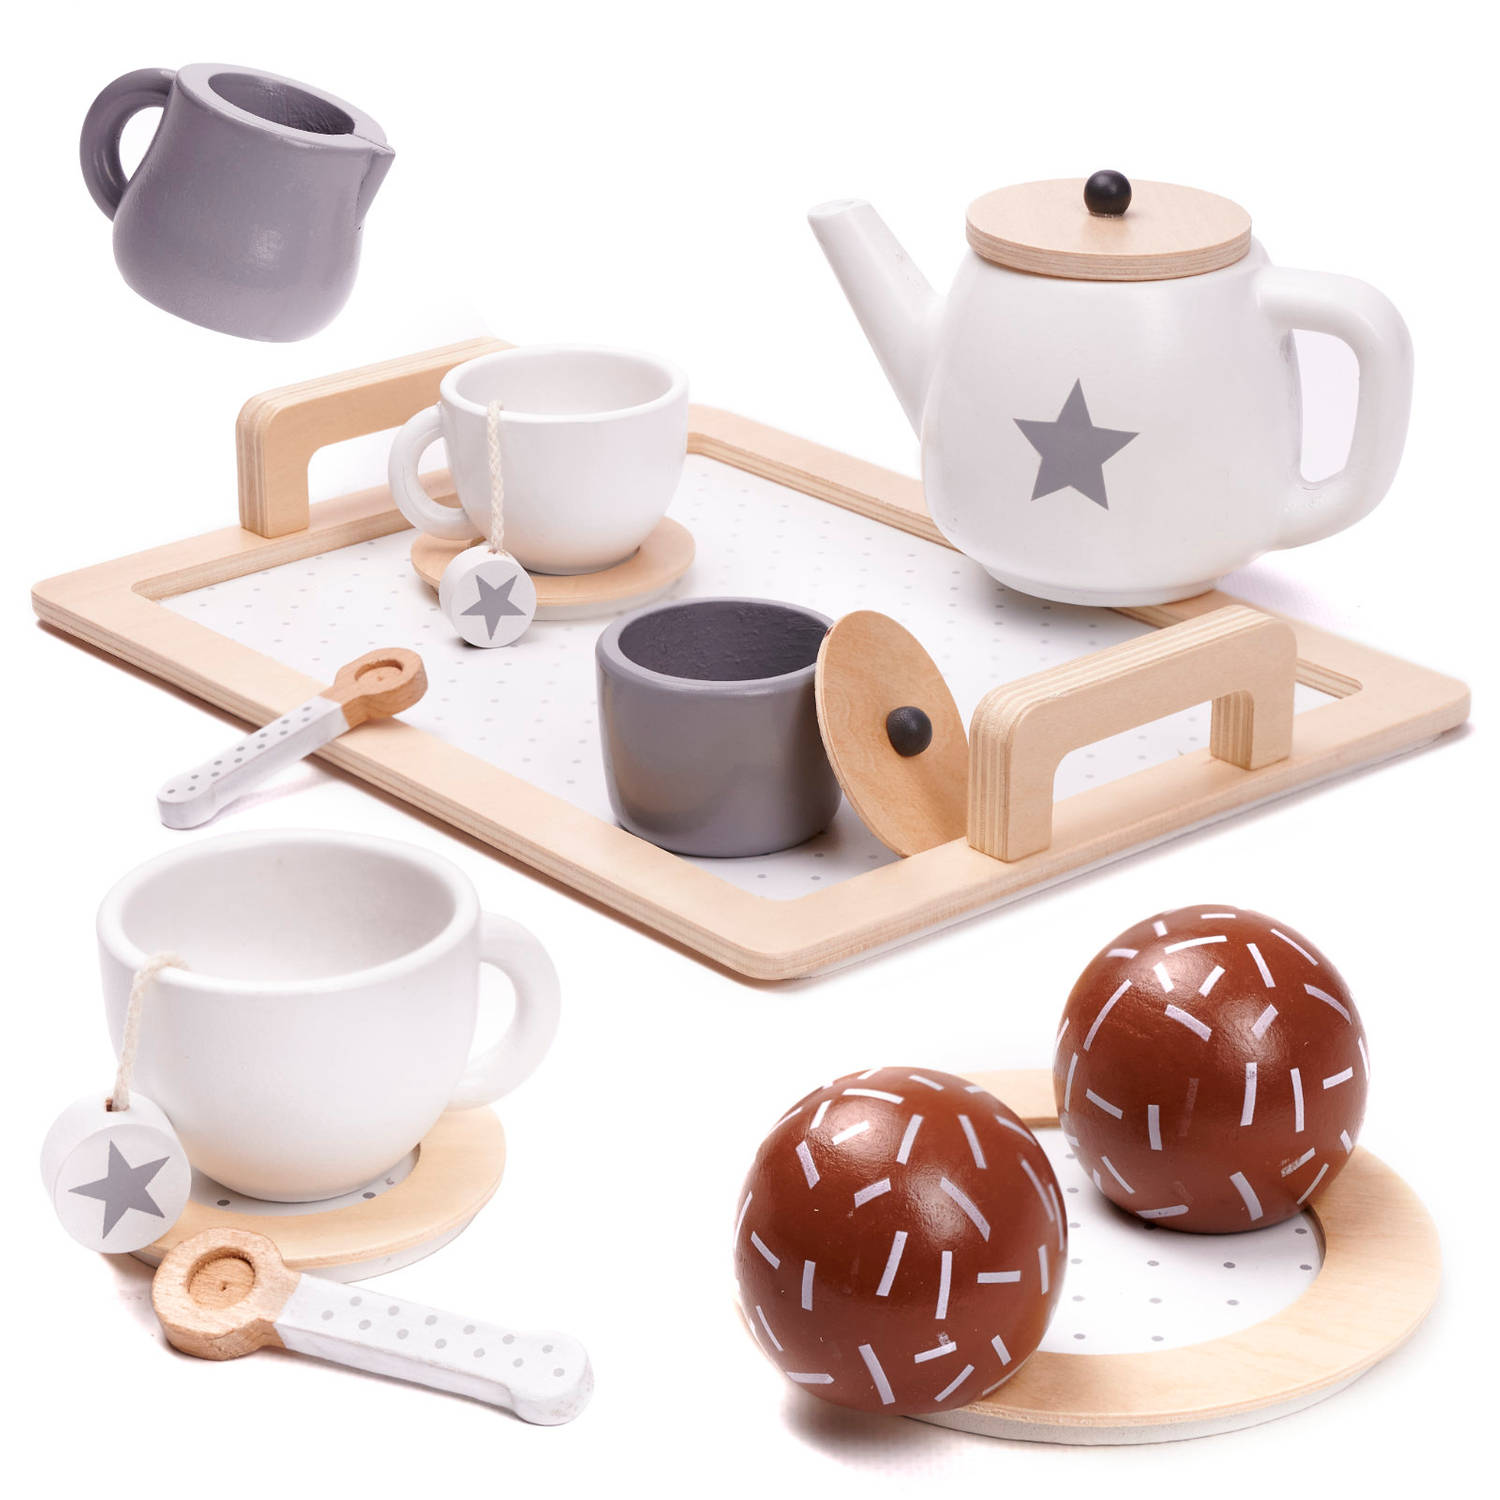 14 delige houten theeservies koffieservies voor kinderen -houten servies set duurzaam